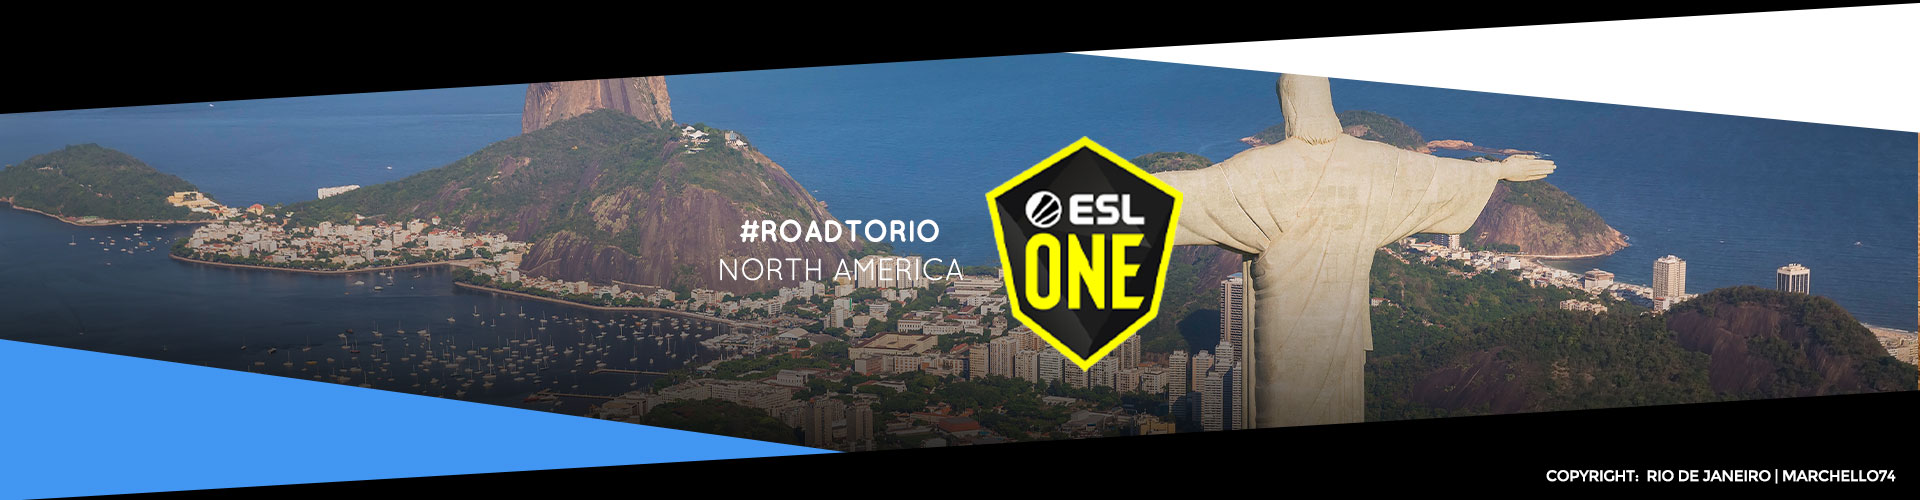 Eventsida för nordamerikanska ESL One: Road to Rio